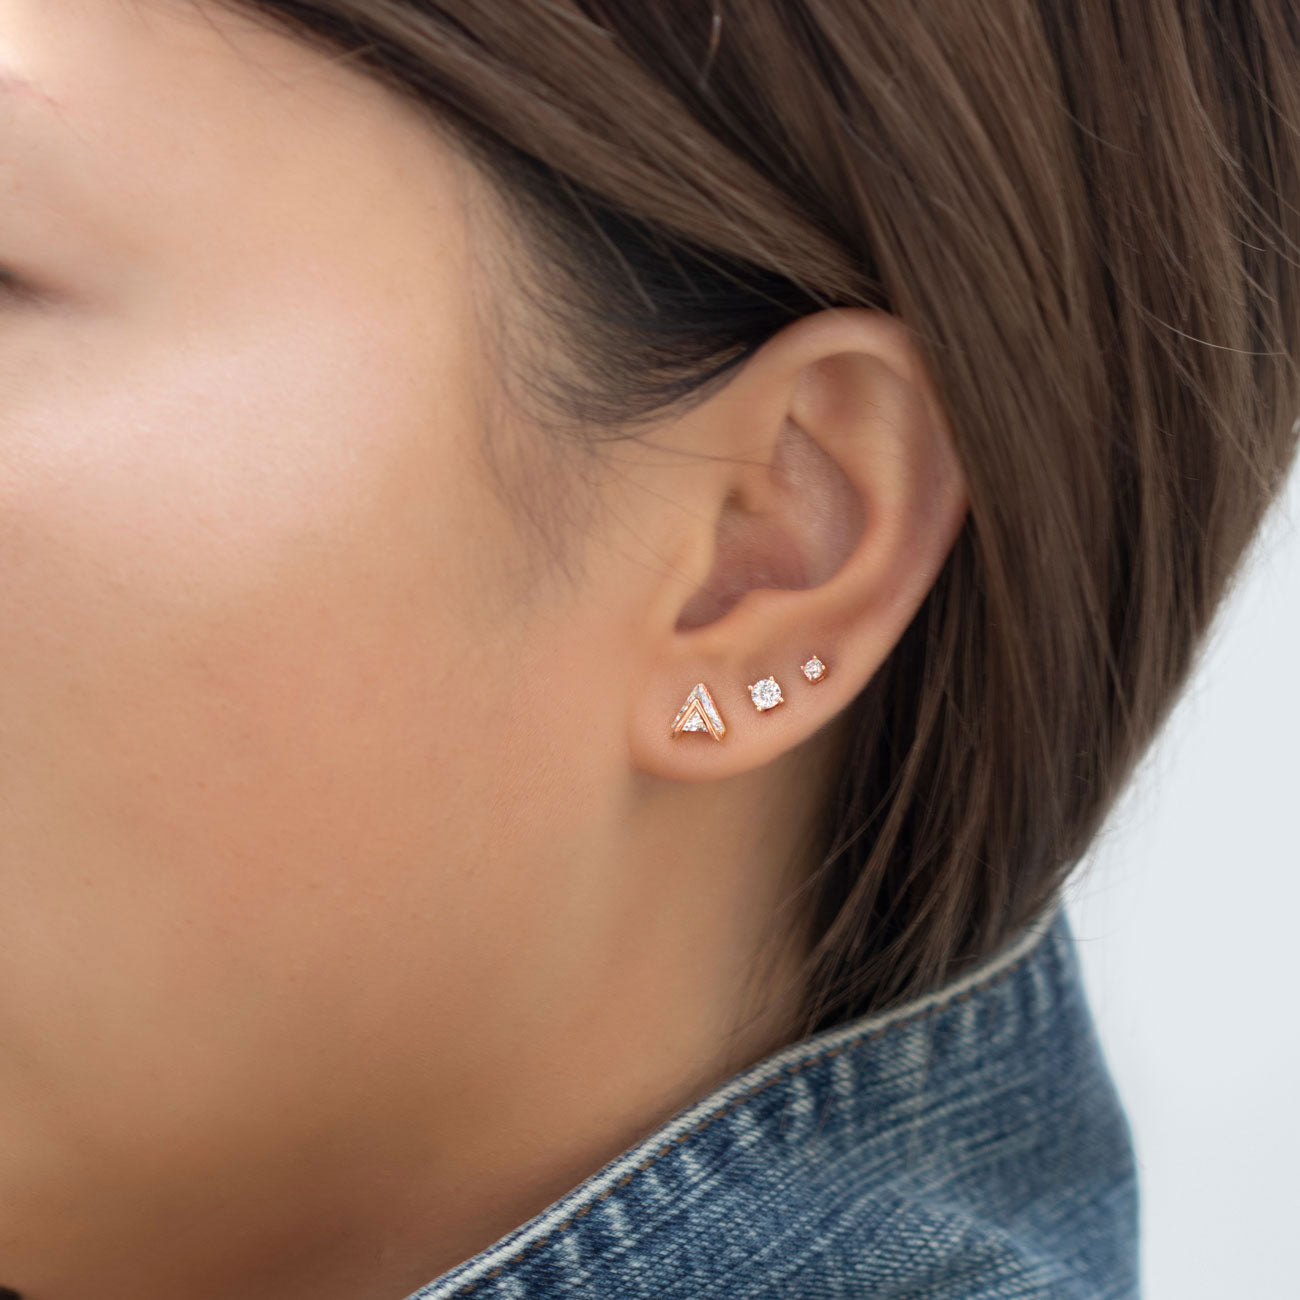 Stud Earrings Girl Accessories | Stud Earrings Set Girls | Earring Stud Sets  Women - 12/ - Aliexpress